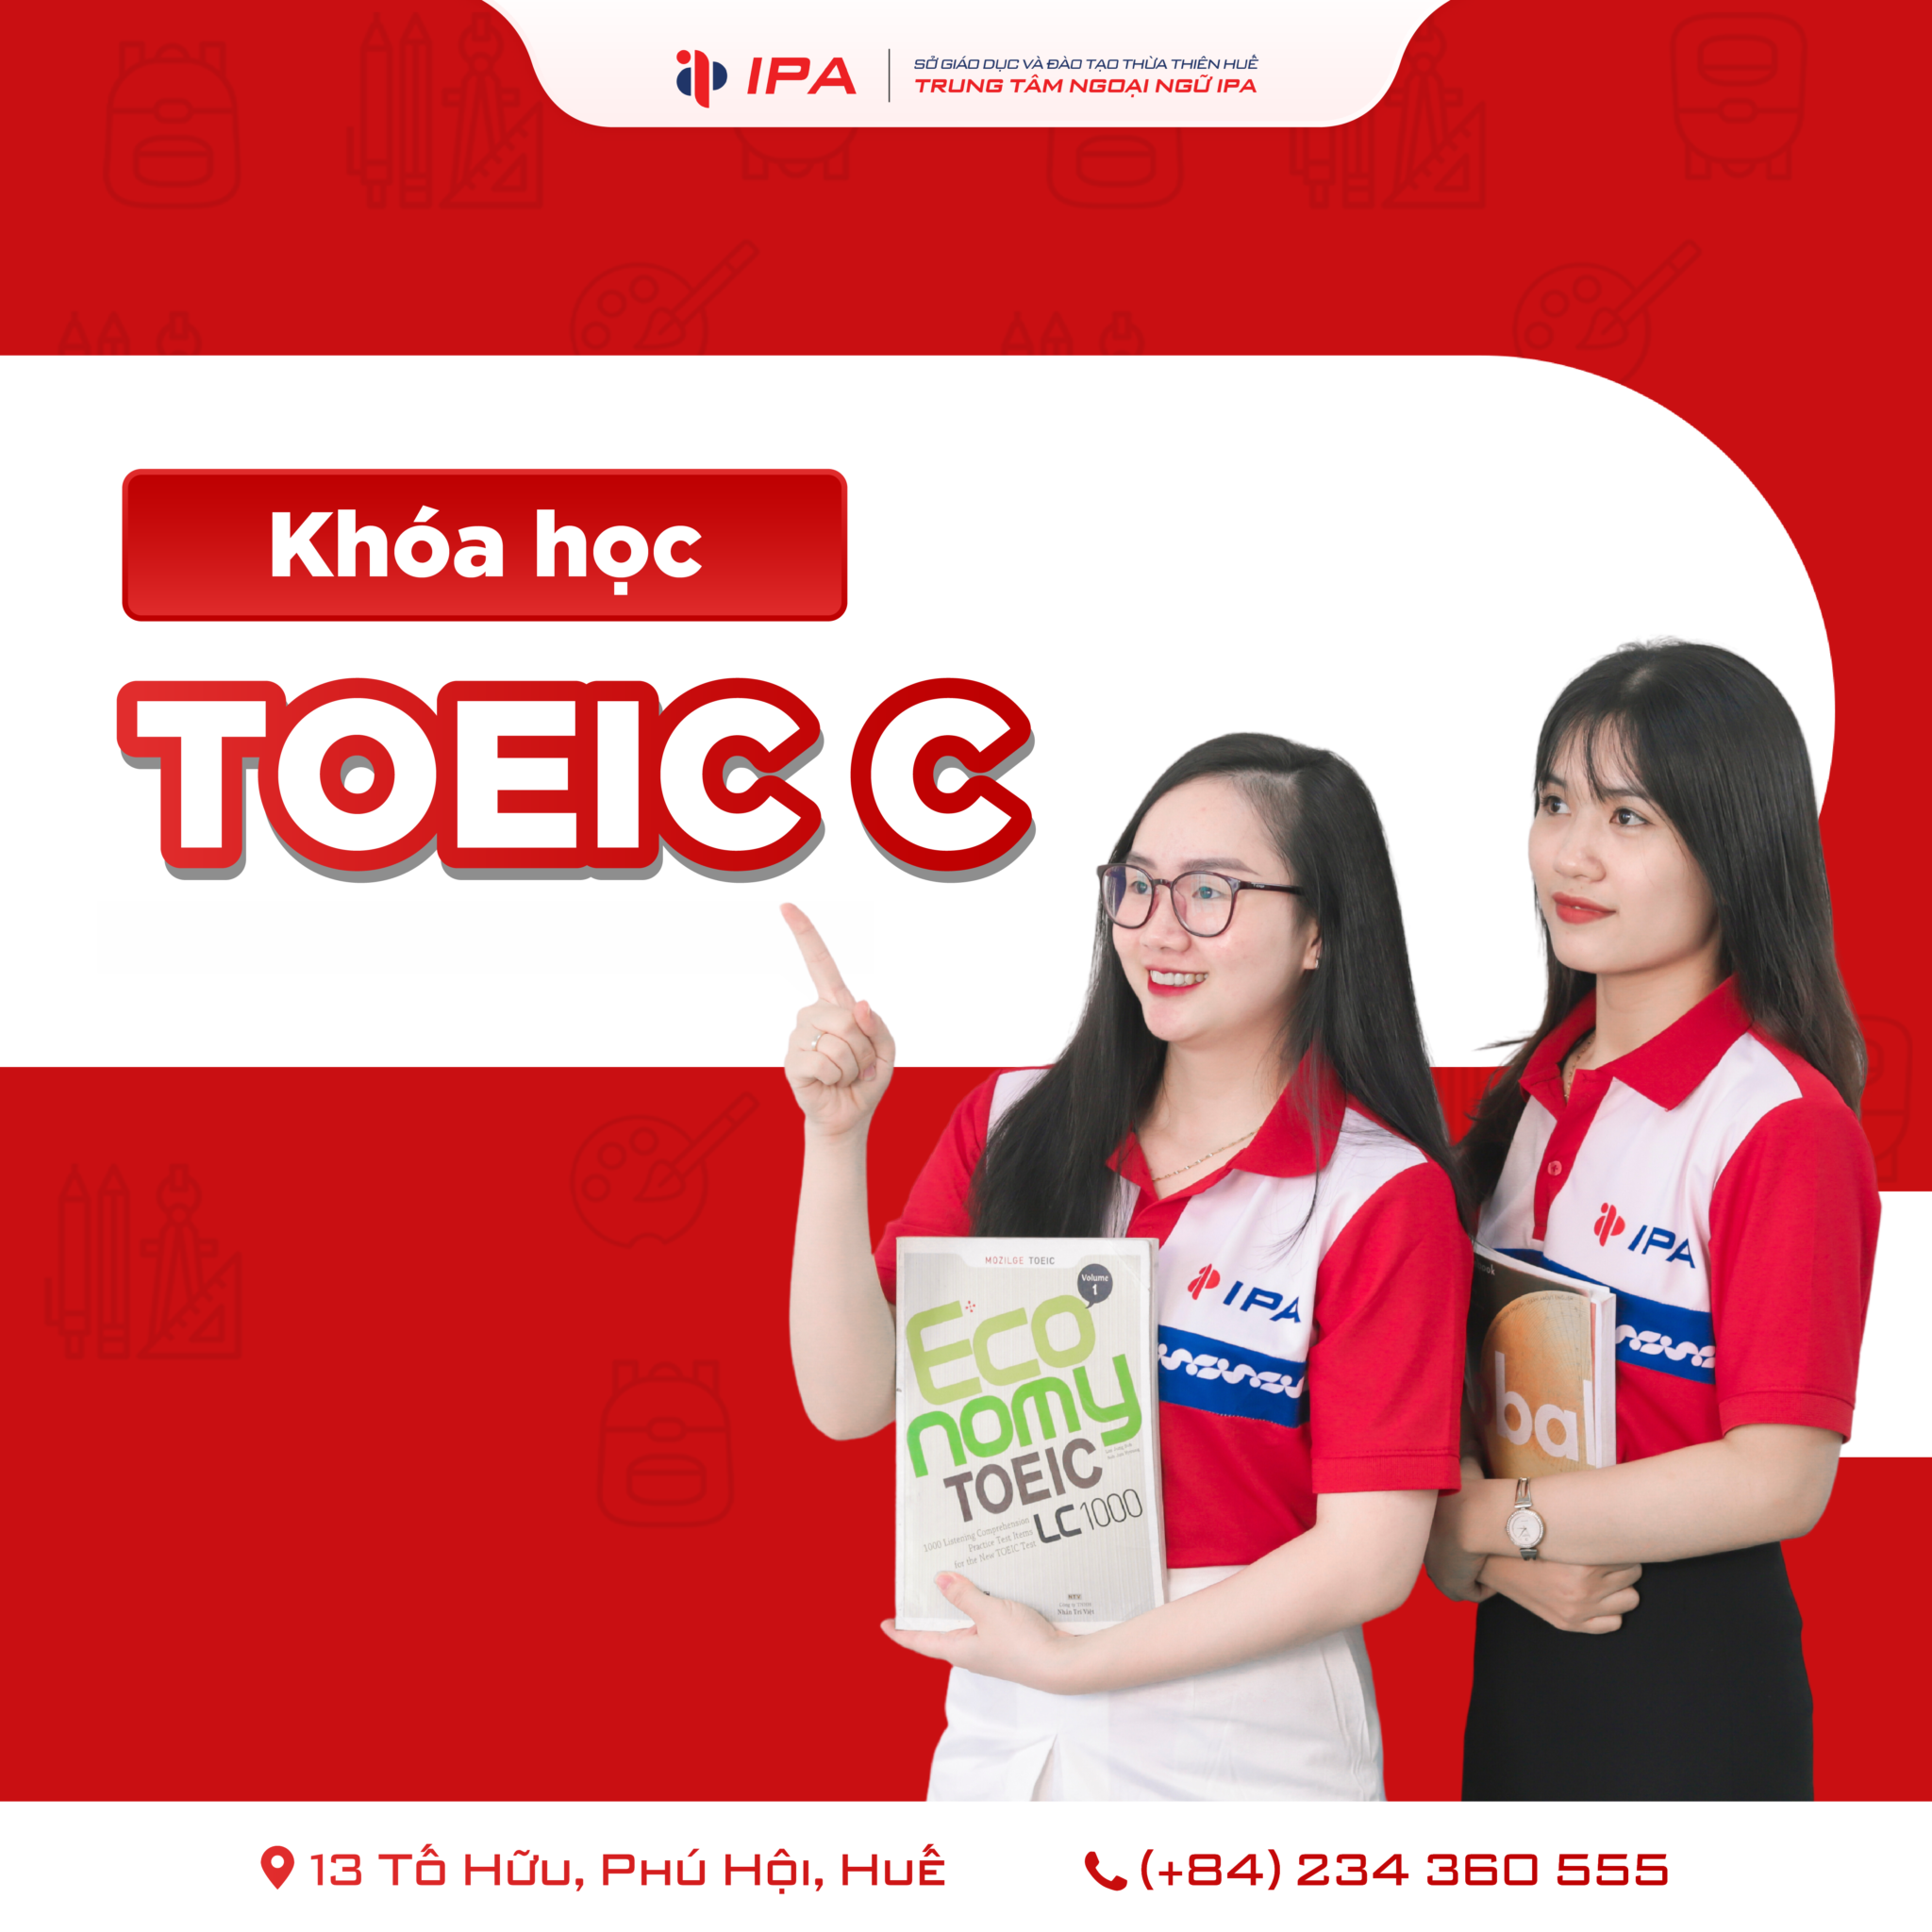 Khóa học TOEIC C 700+ cung cấp các chiến lược đọc hiệu quả để bạn nắm vững nghĩa và cấu trúc của các bài đọc TOEIC. Bạn sẽ học cách tìm hiểu và nhận biết từ khóa